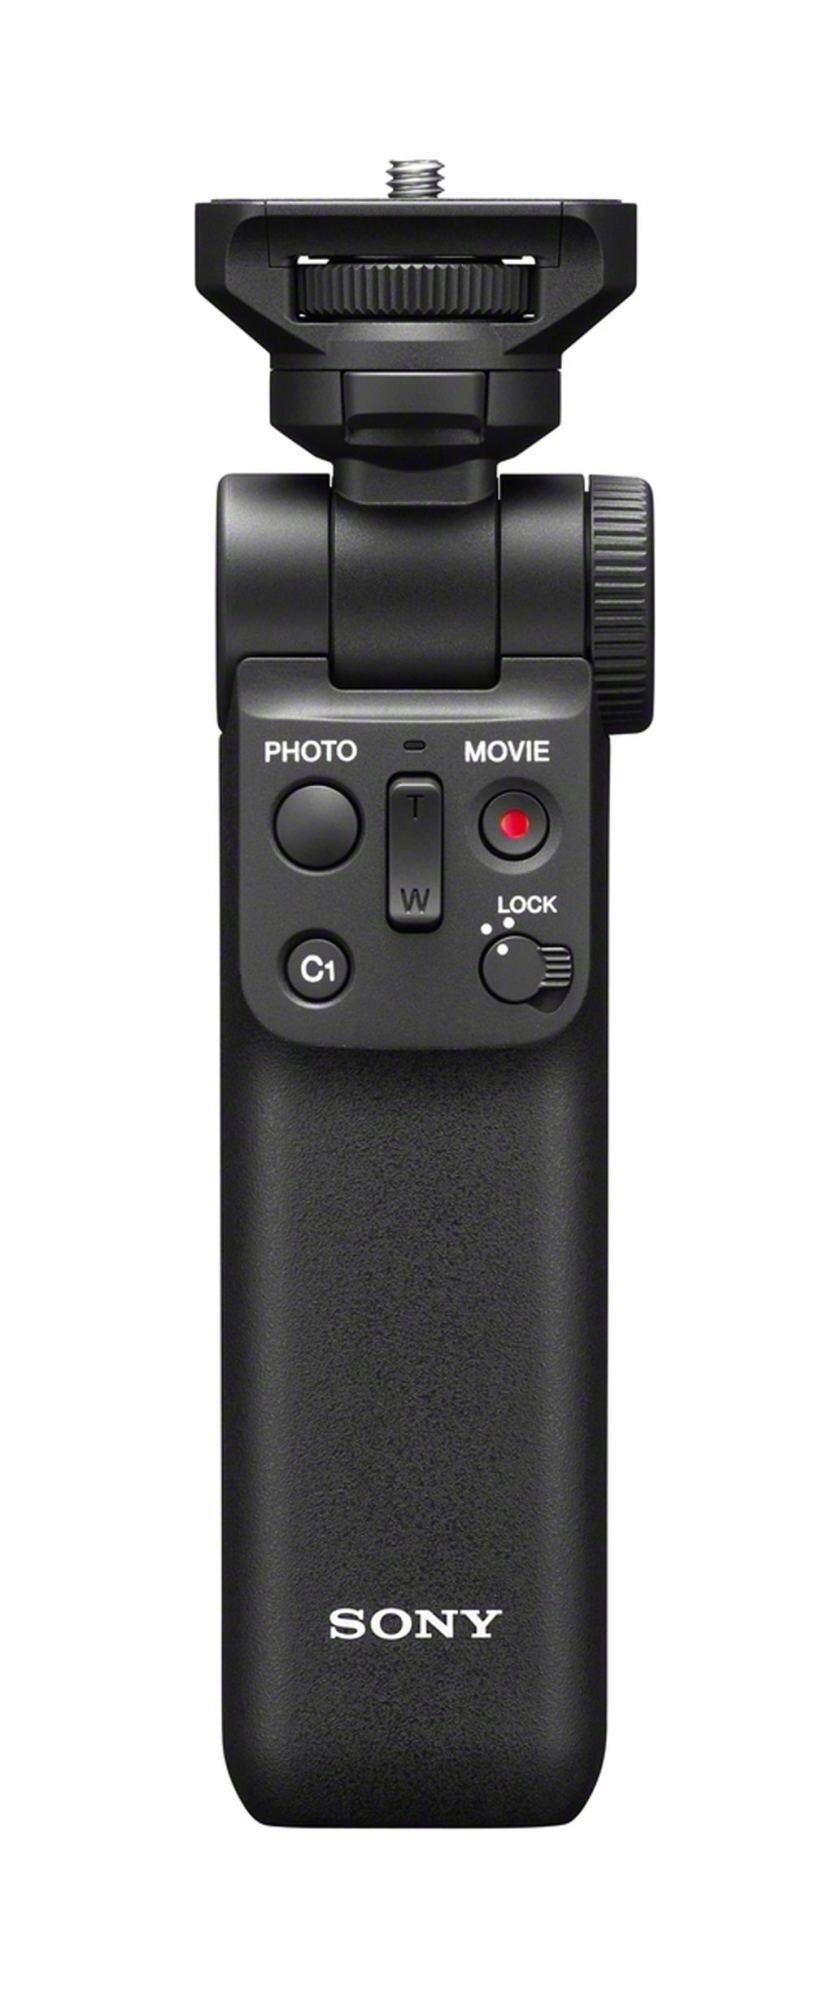 Sony Alpha ZV-E10 schwarz inkl. Sony E PZ 16-50mm 1:3,5-5,6 OSS + Sony ECM-W2BT Mikrofon + Sony GP-VPT2BT Handgriff